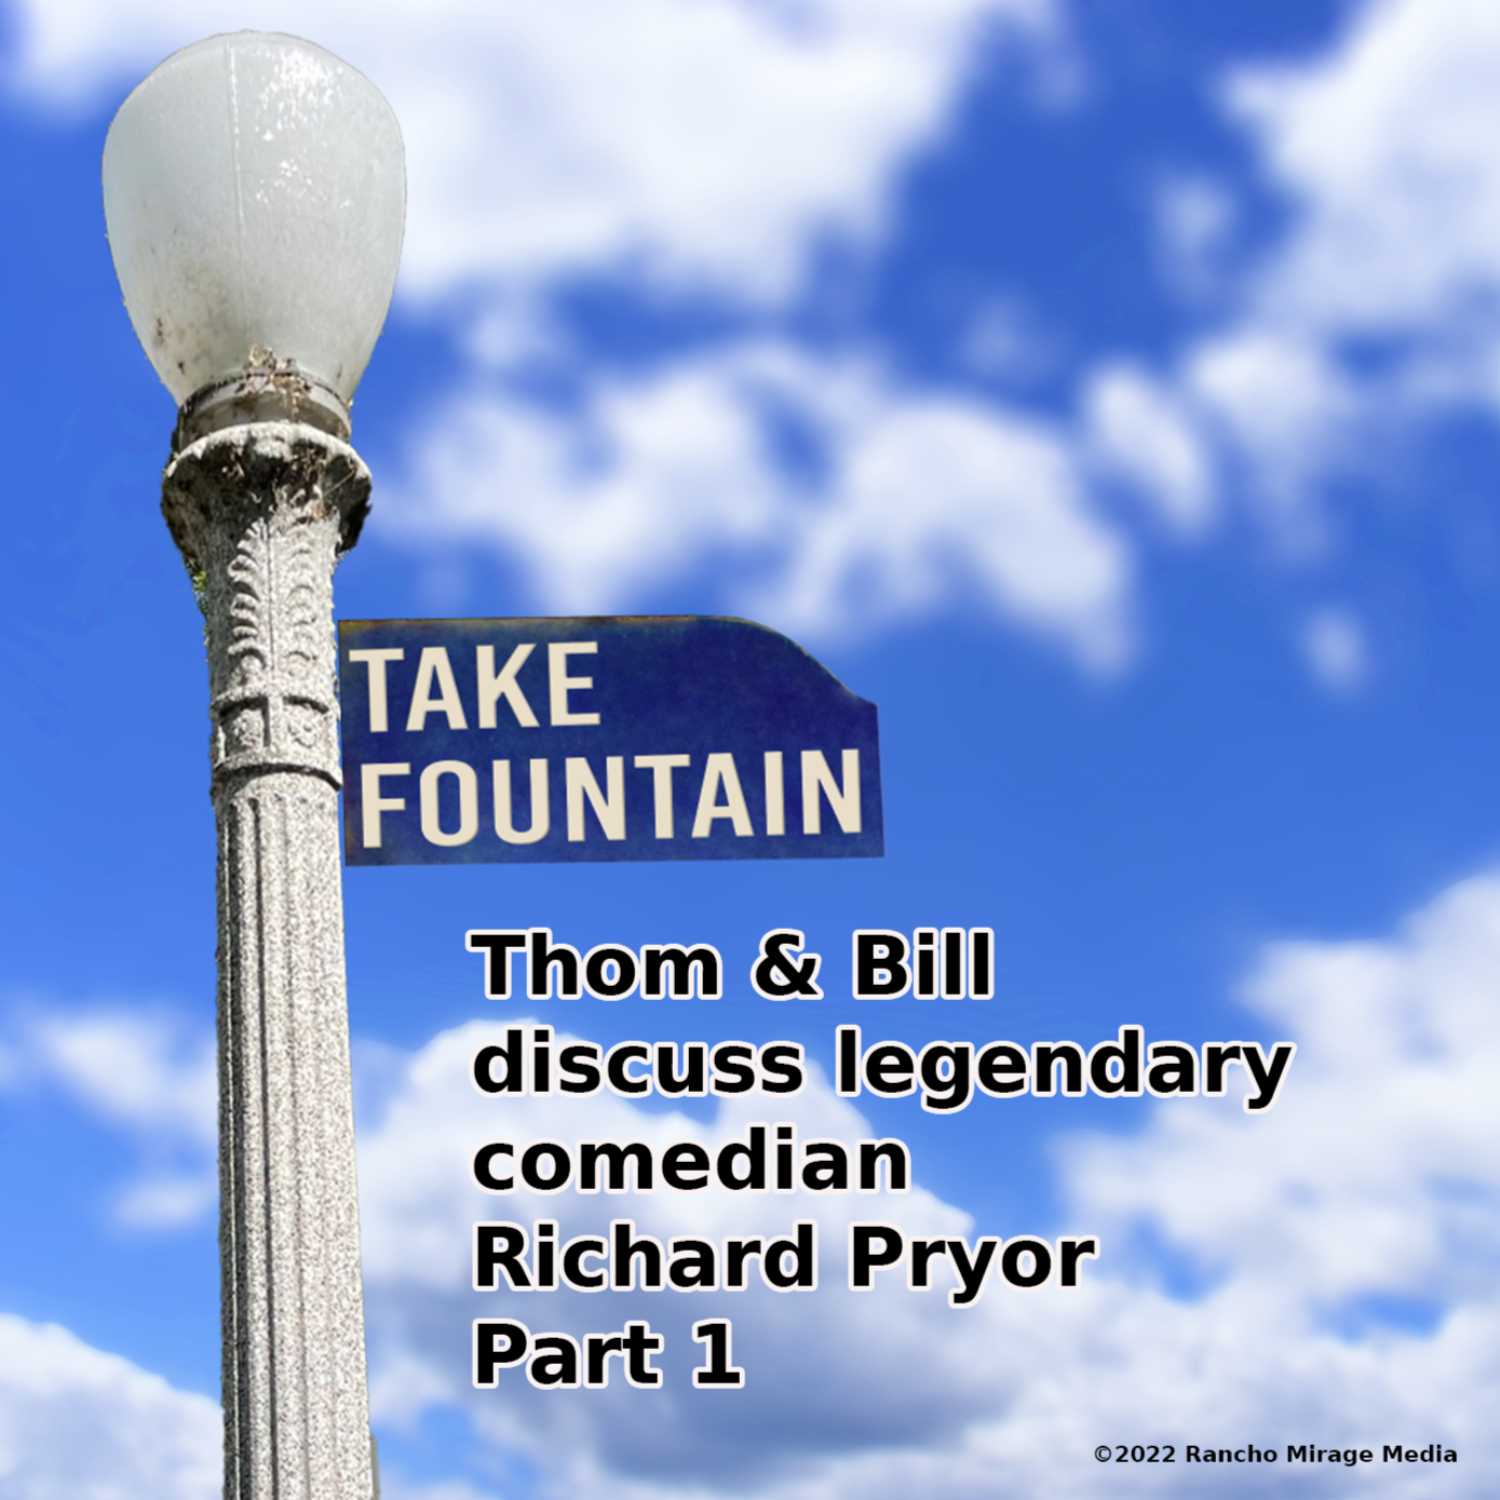 Take Fountain - Richard Pryor - Part 1